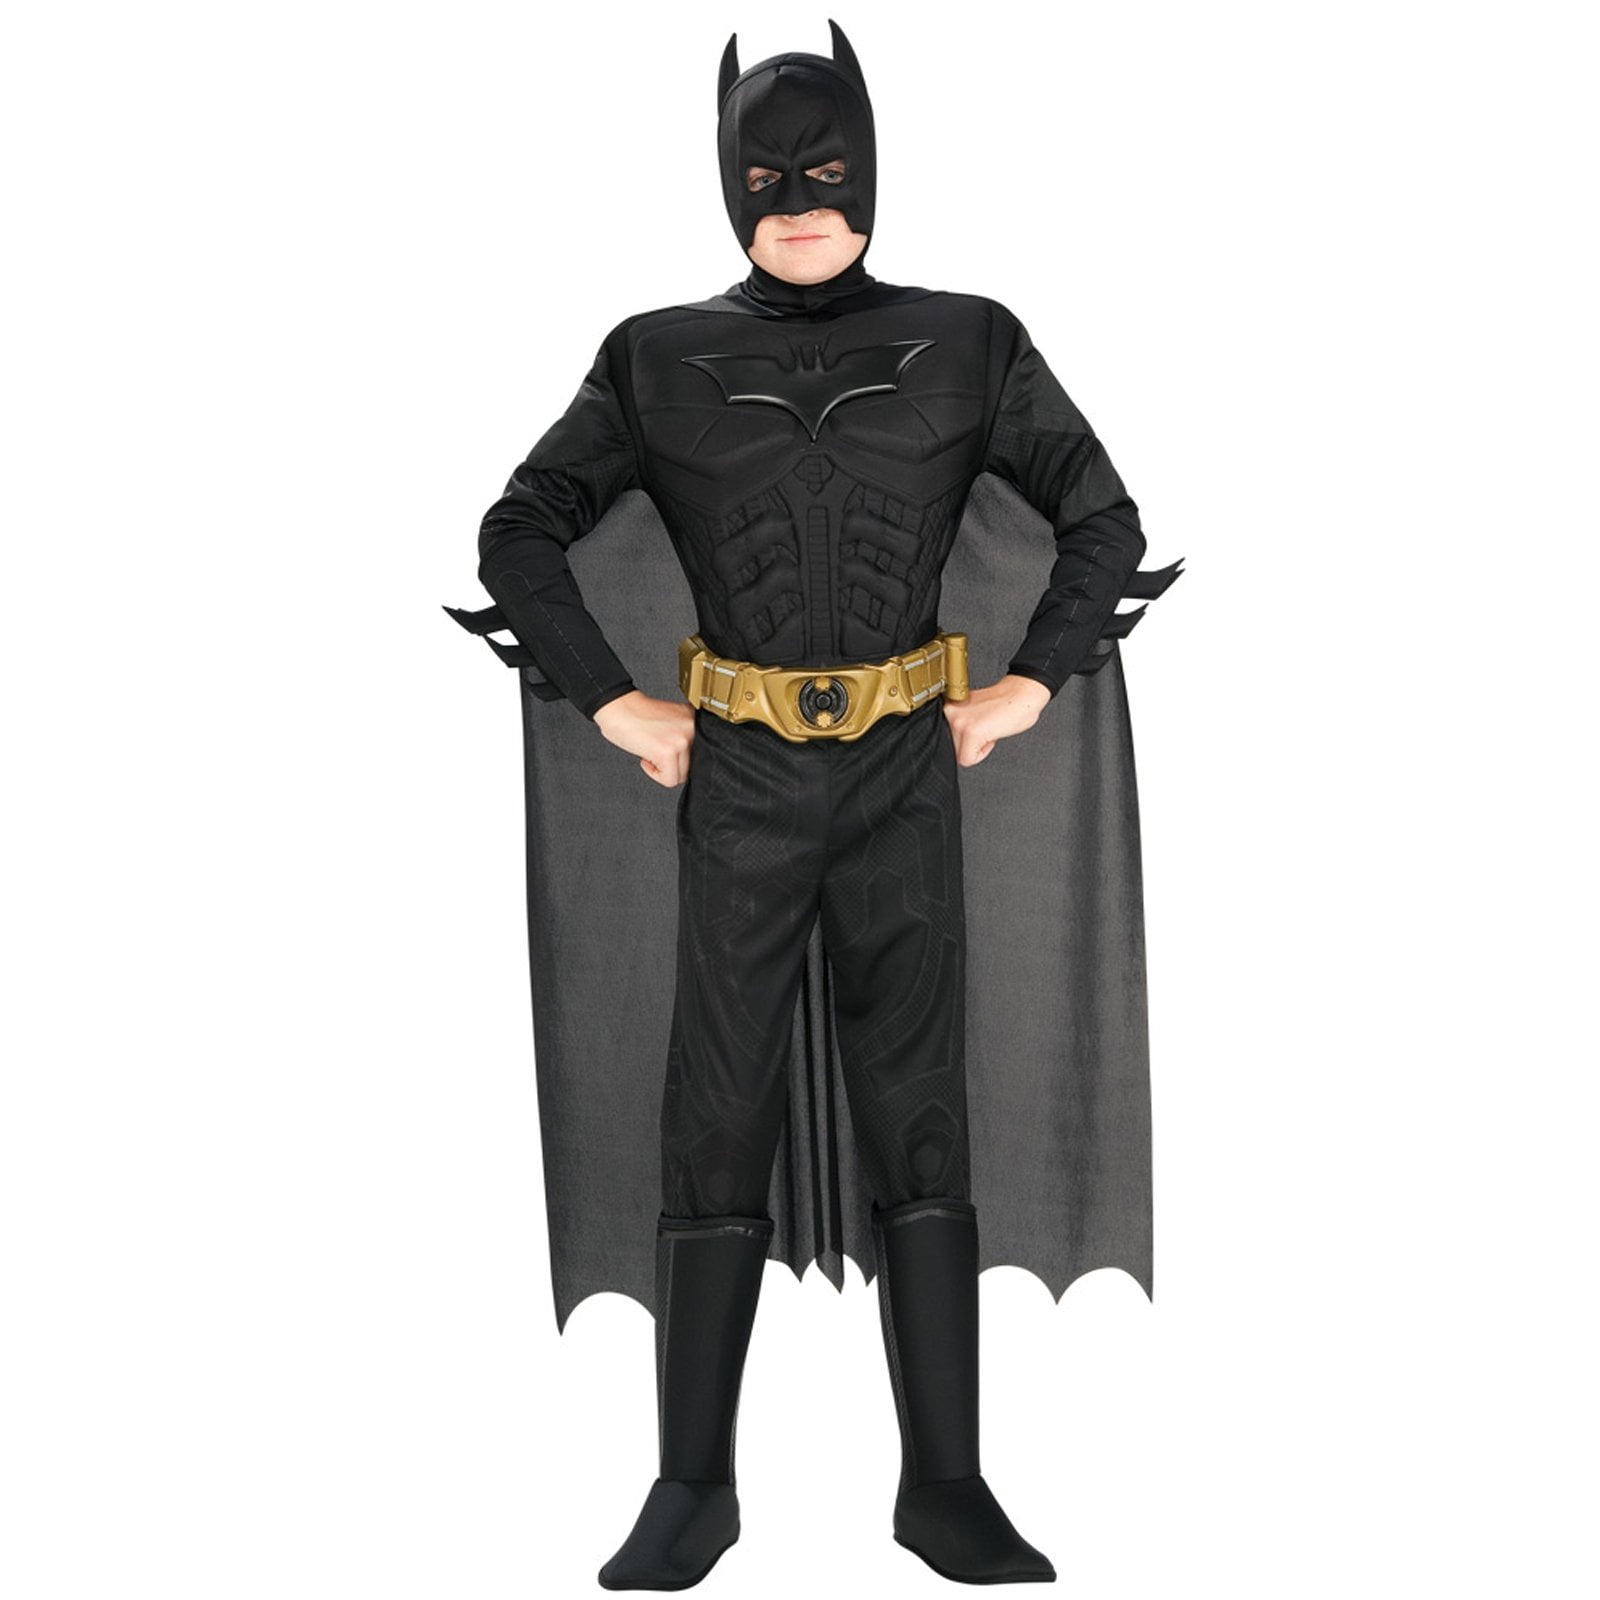 Details about   Boys Deluxe Batman Justice League Halloween Costume size M 8-10 